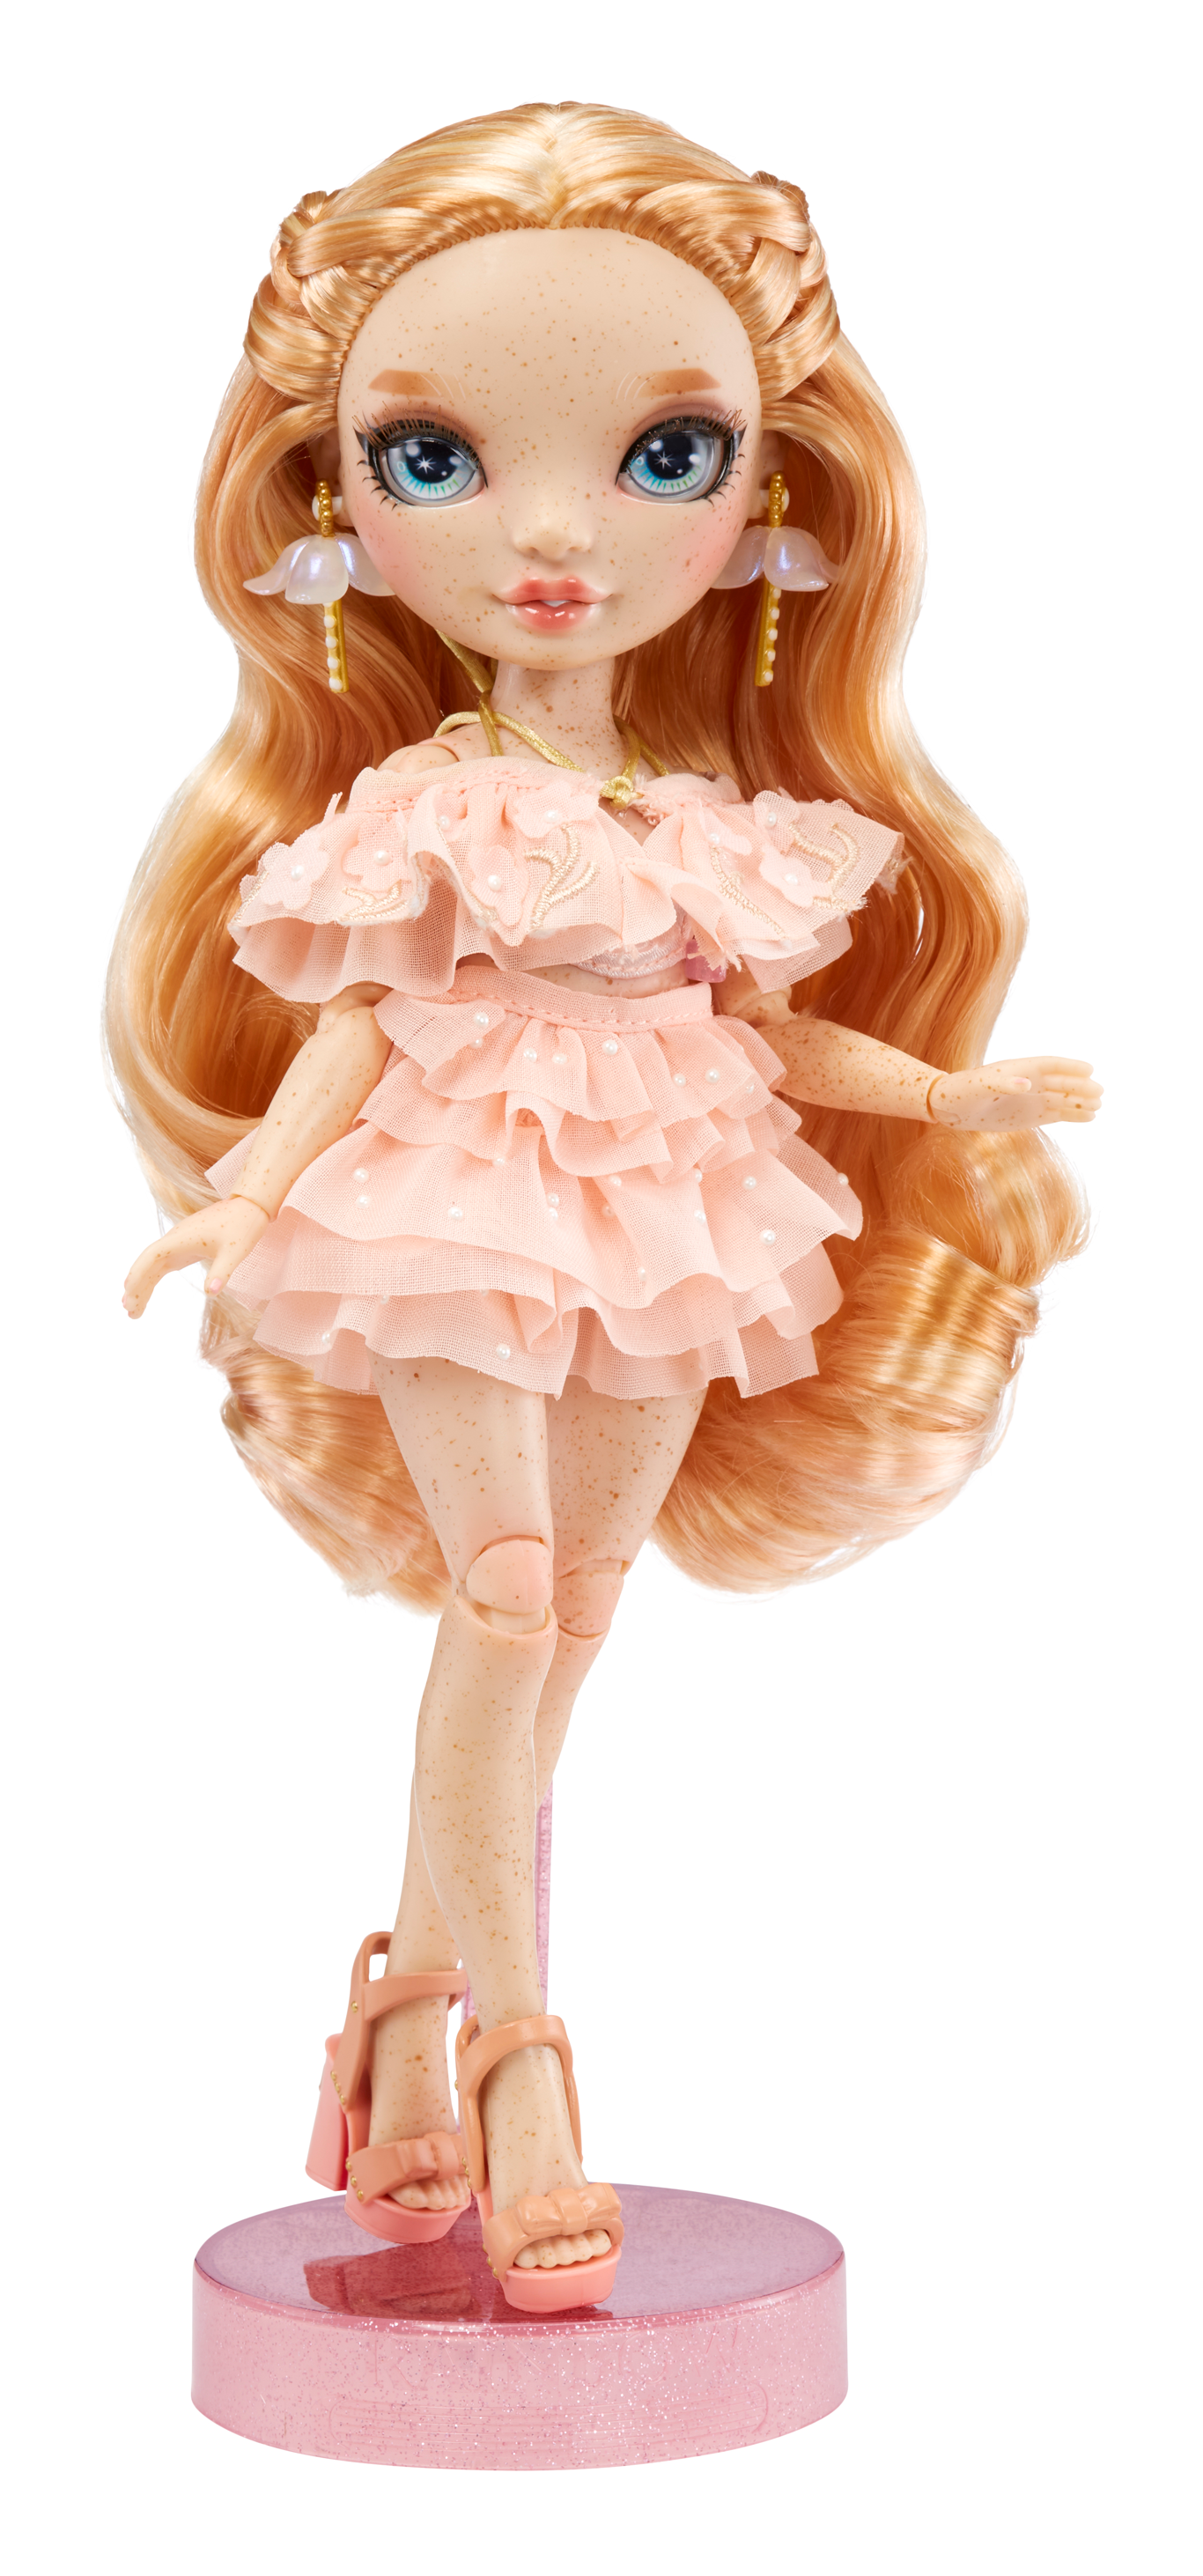 Rainbow high fashion doll serie 5: victoria whitman. bambola rosa chiaro con vestito alla moda e oltre 10 accessori di gioco colorati - Rainbow High